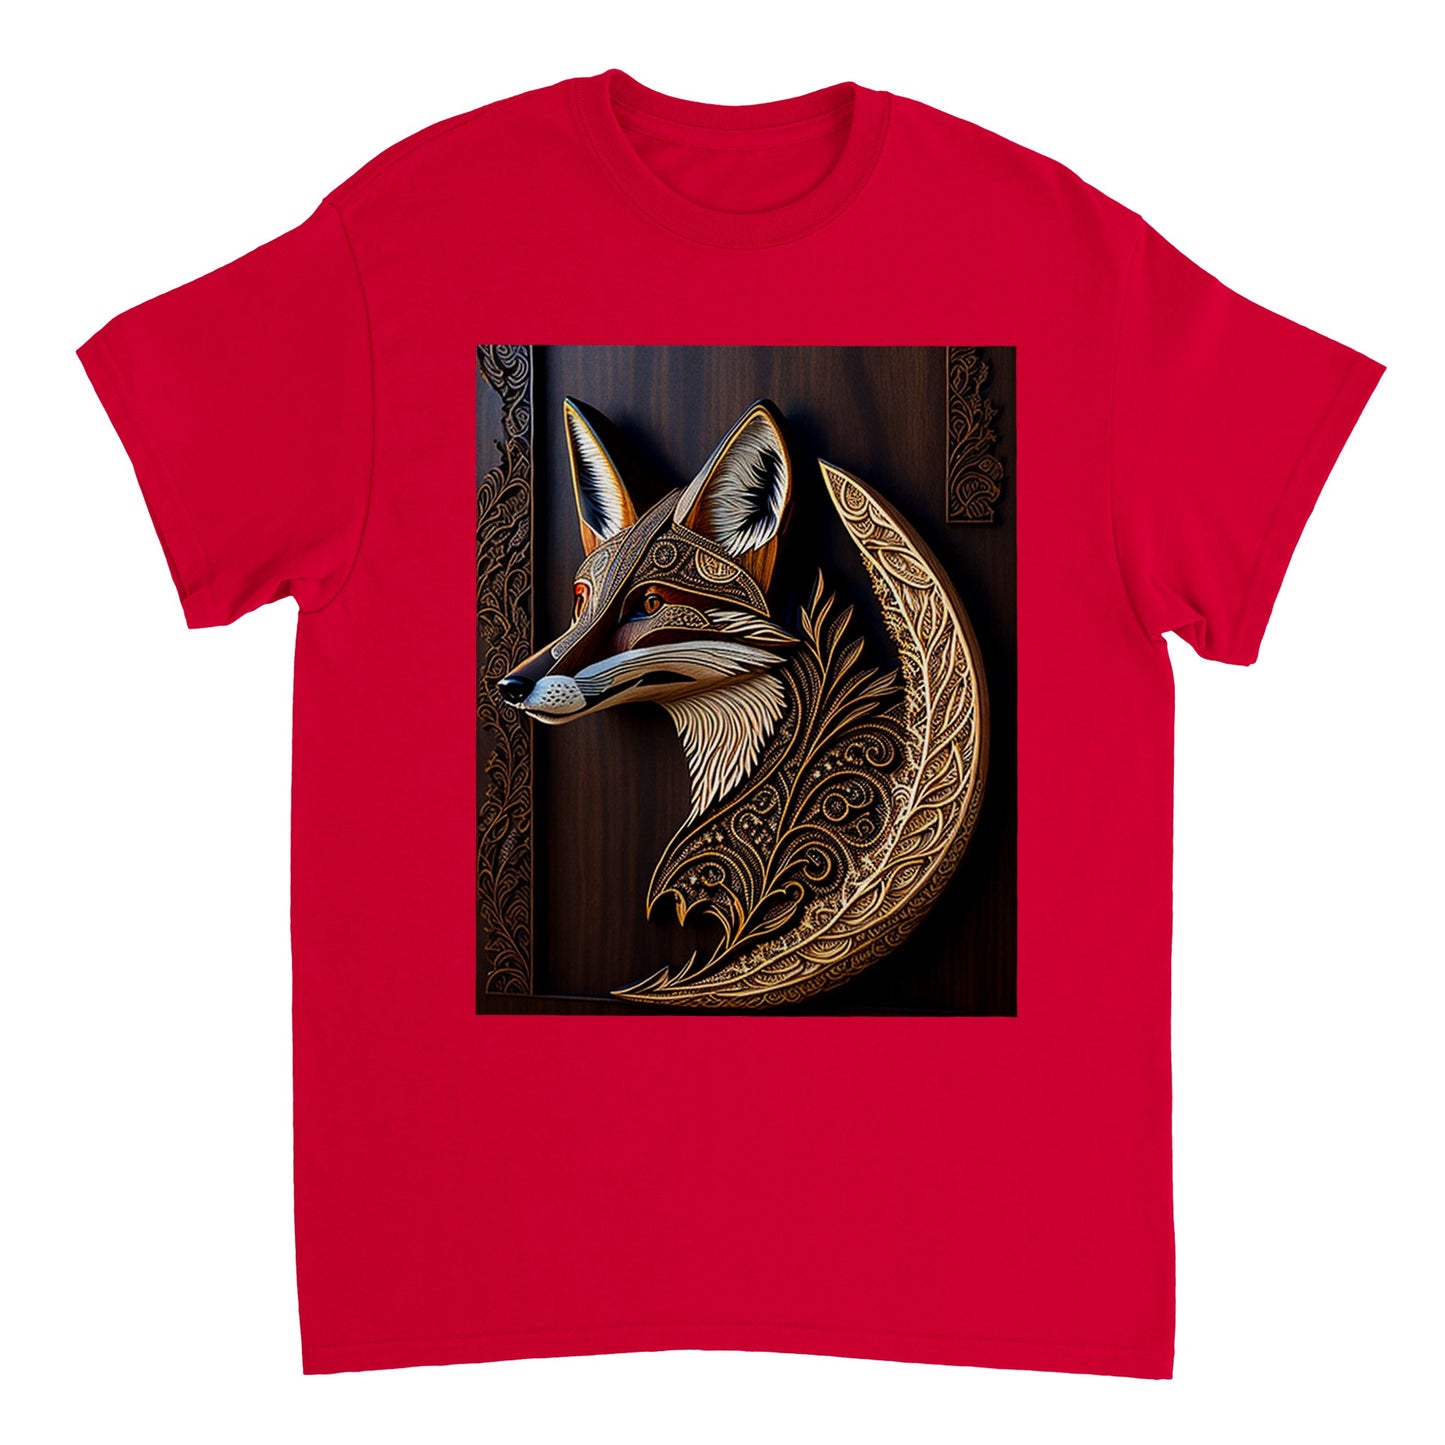 3D Wooden Animal Art - Heavyweight Unisex Crewneck T-shirt 48